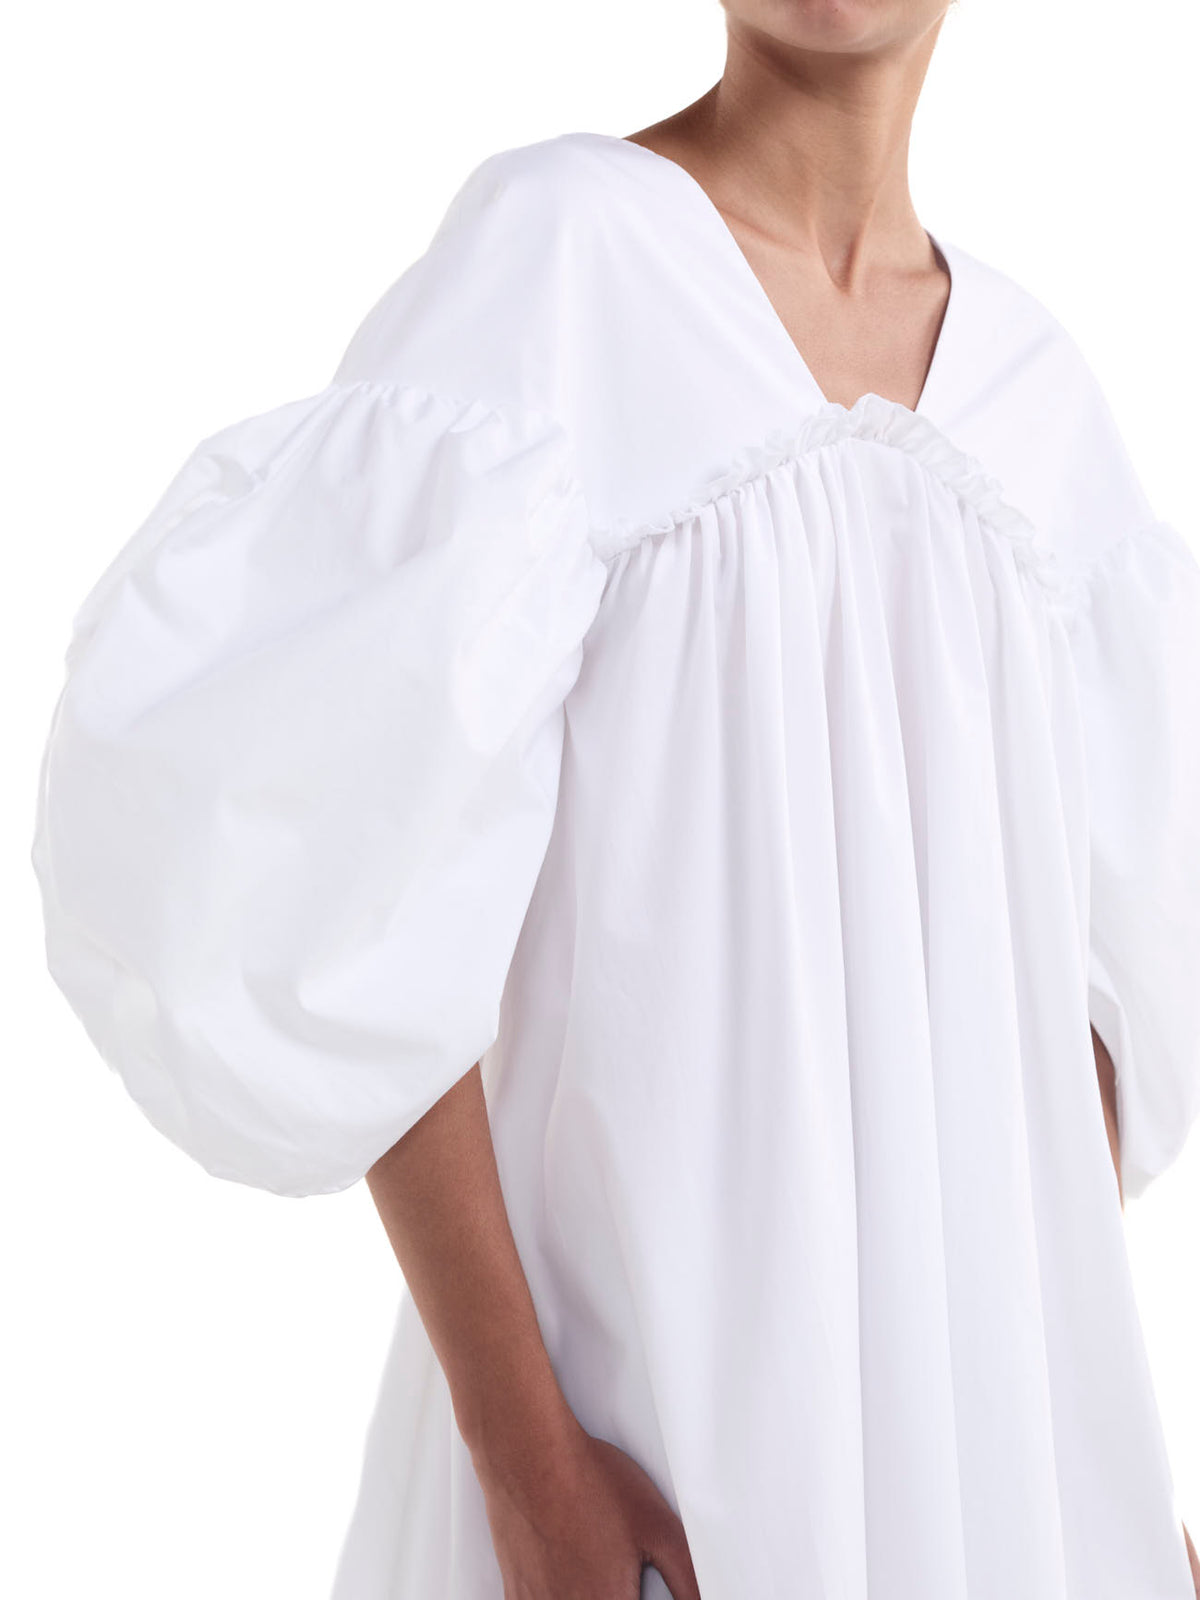 Annie Dress White Cotton